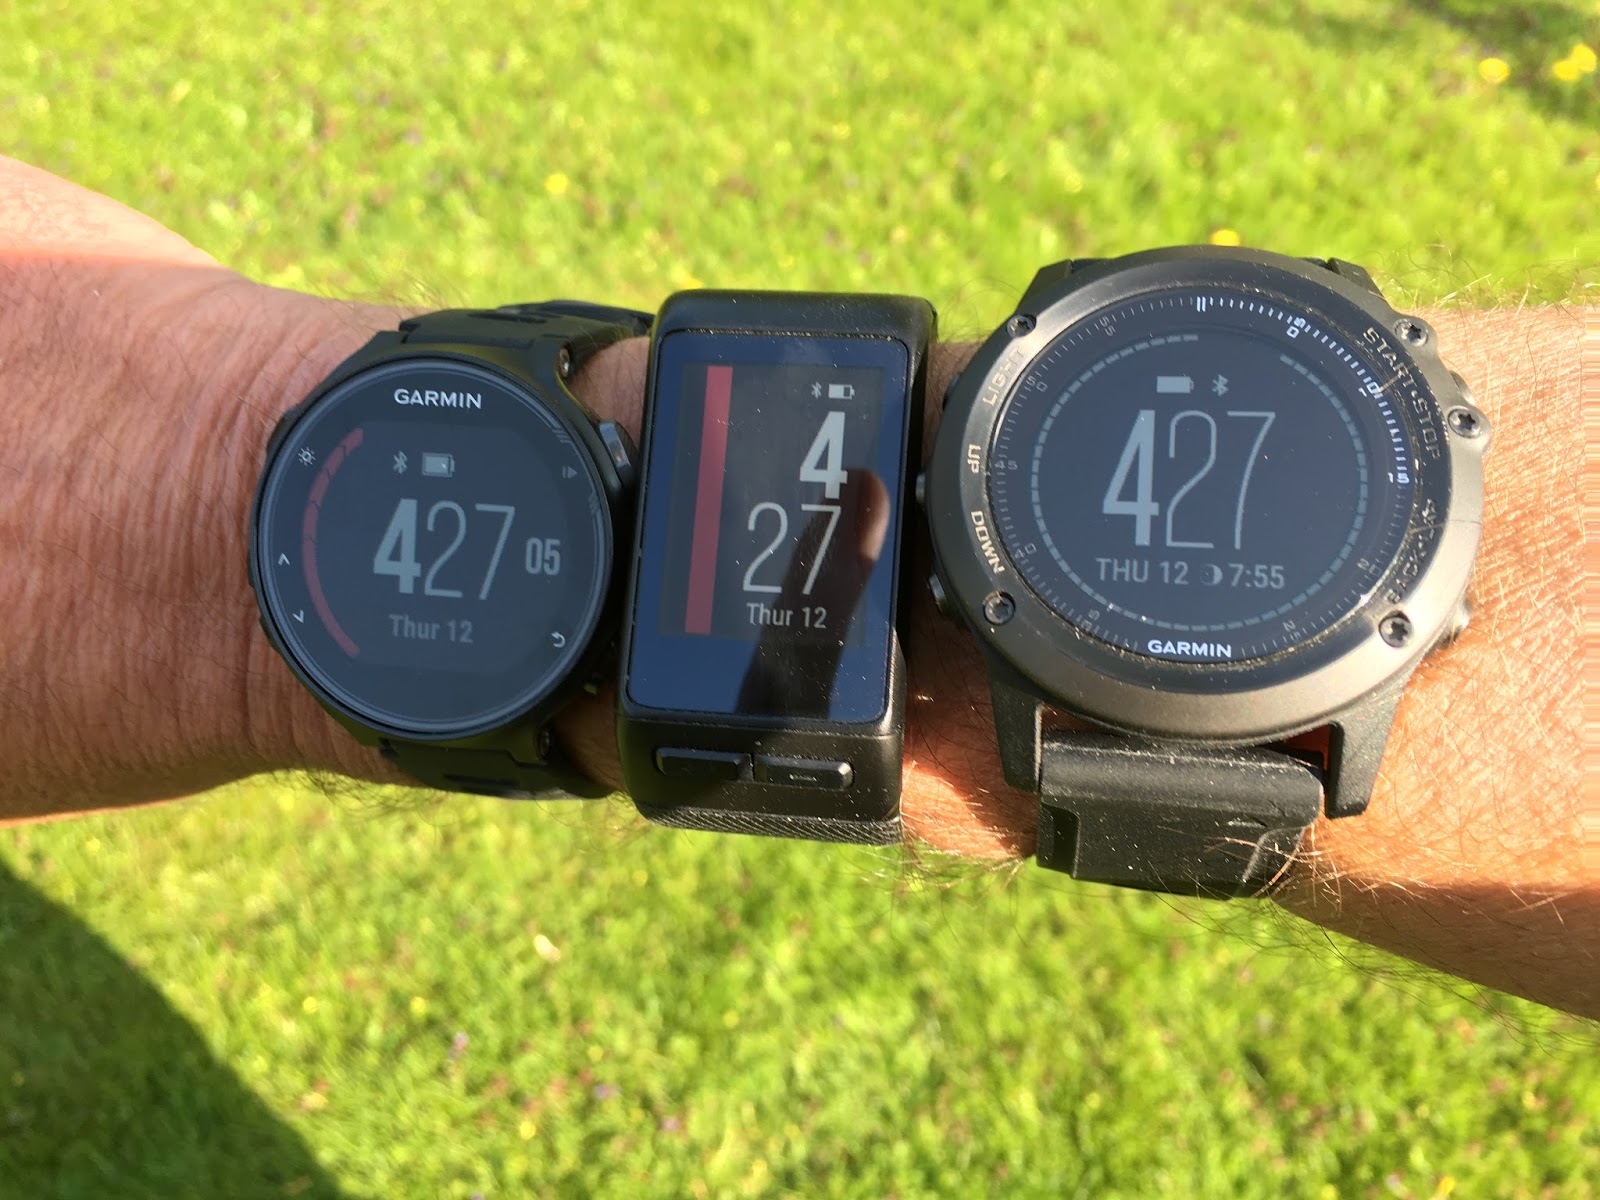 verlichten De eigenaar Geval Road Trail Run: Comparison Review-2016 Garmin GPS Watches with Wrist Heart  Rate:Forerunner 735XT, Vivoactive HR, Fenix 3 HR